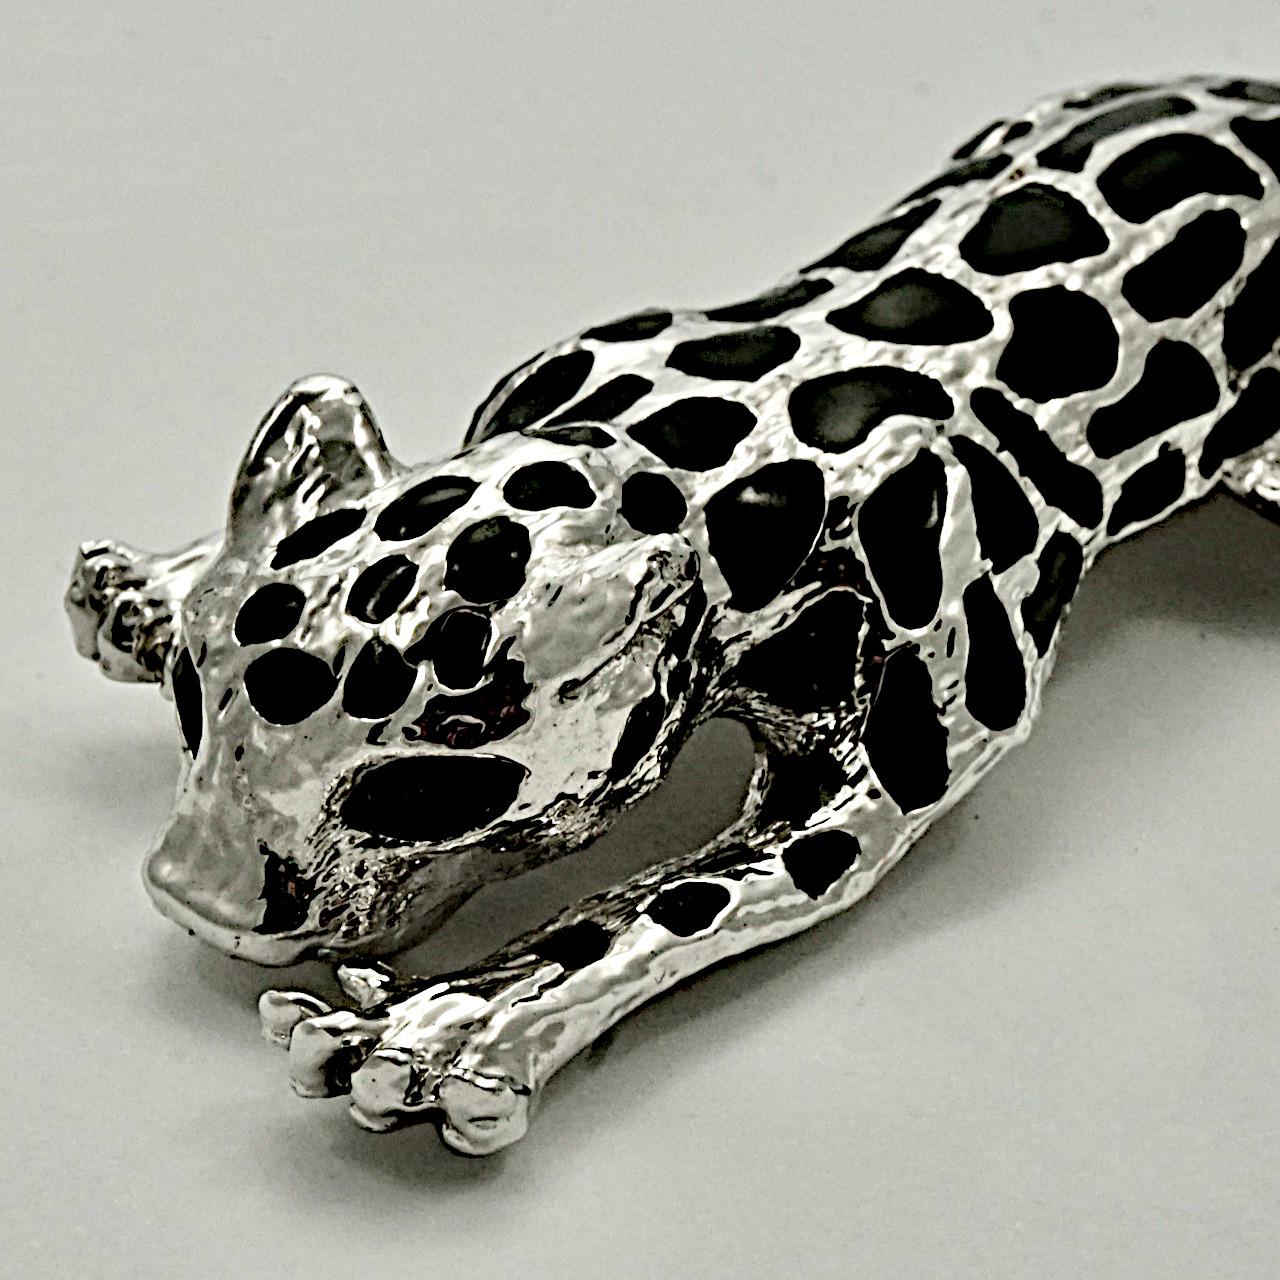 Broche élégante en métal argenté représentant un chat léopard avec des yeux en strass noir et une queue mobile. Il s'agit d'une grande broche mesurant 13 cm de long pour une largeur maximale de 3,6 cm. La broche est en très bon état.

Cette